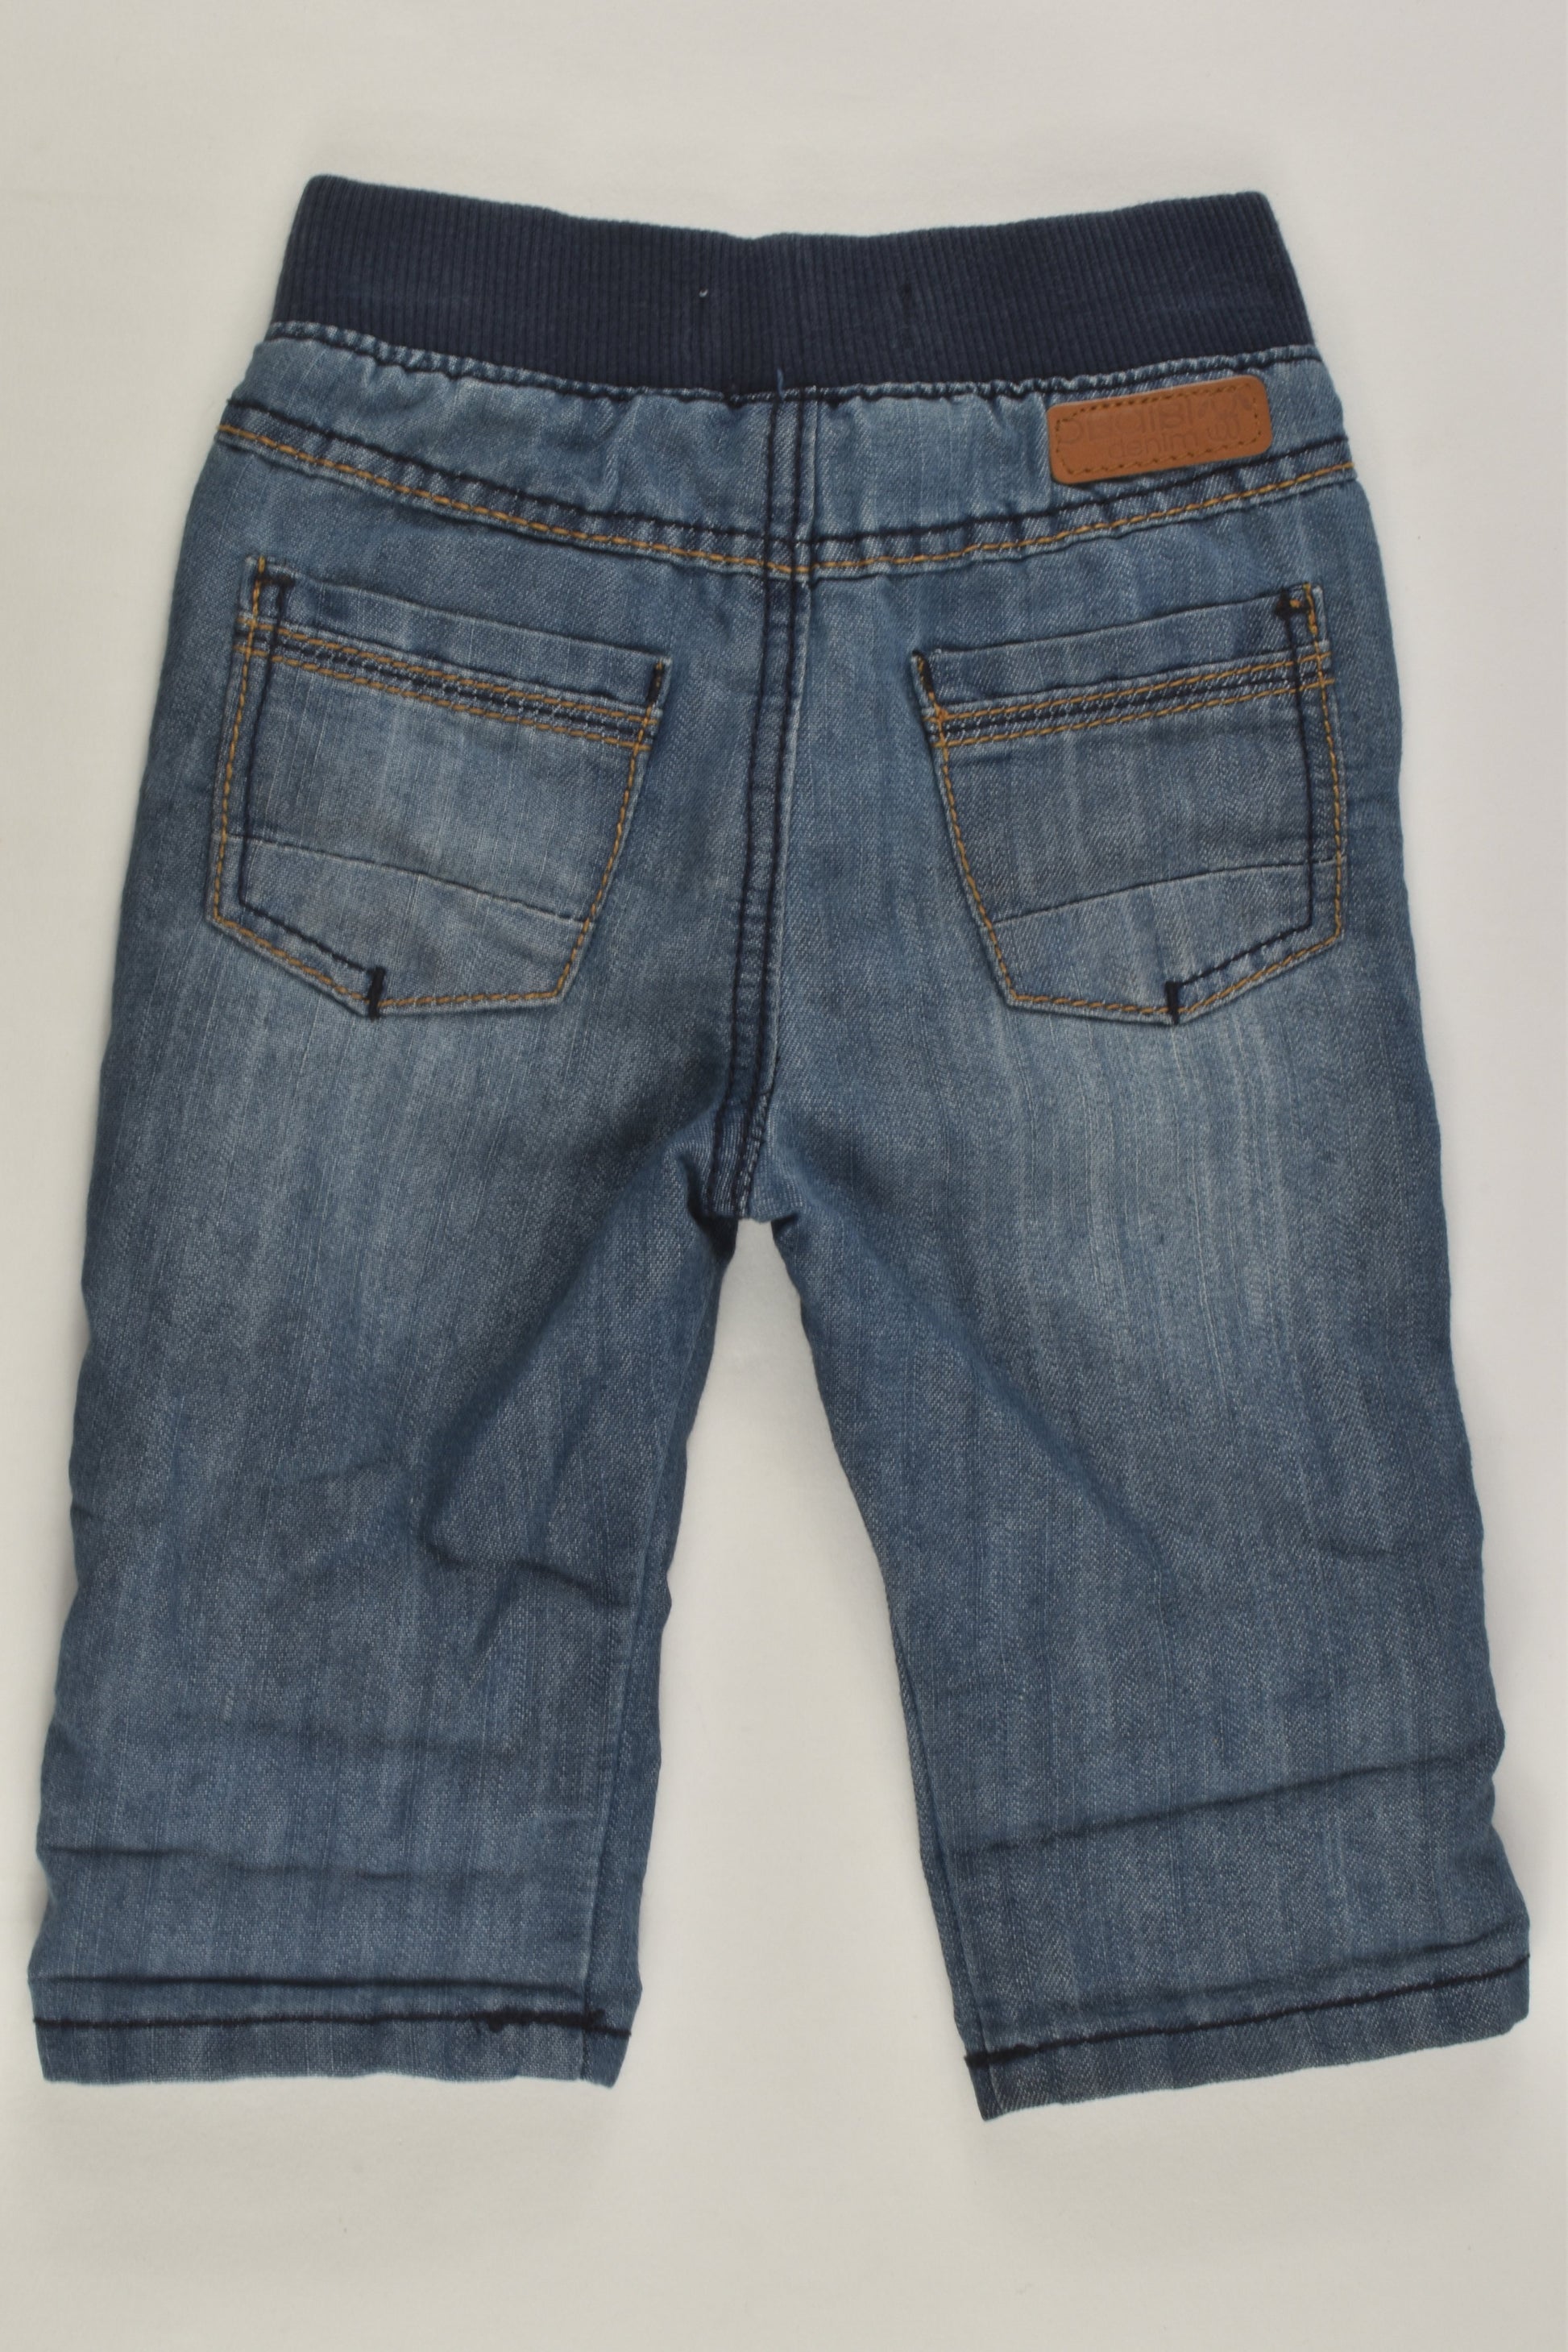 Obaïbi Size 000 (3M, 59 cm) Lightweight Denim Pants